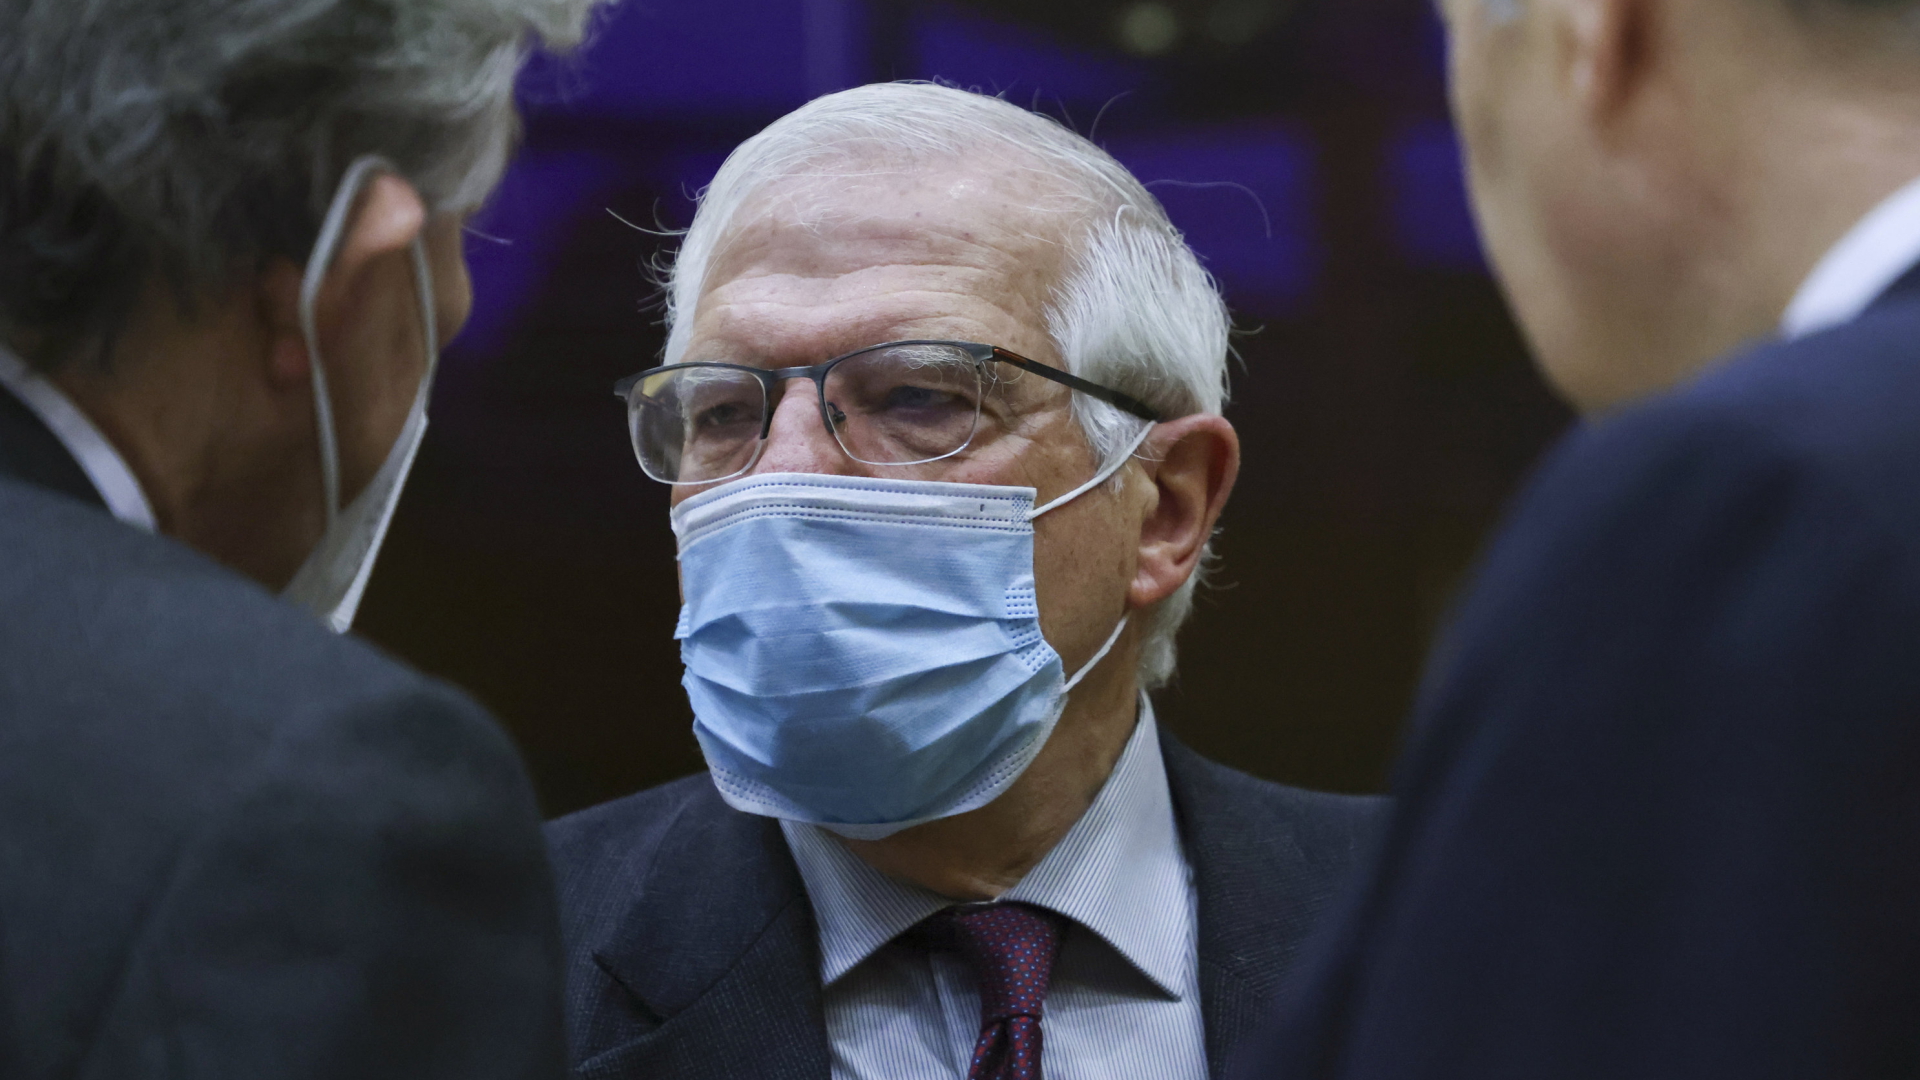 Der EU-Außenbeauftragte Joseph Borrell mit Maske im Gespräch. | AP